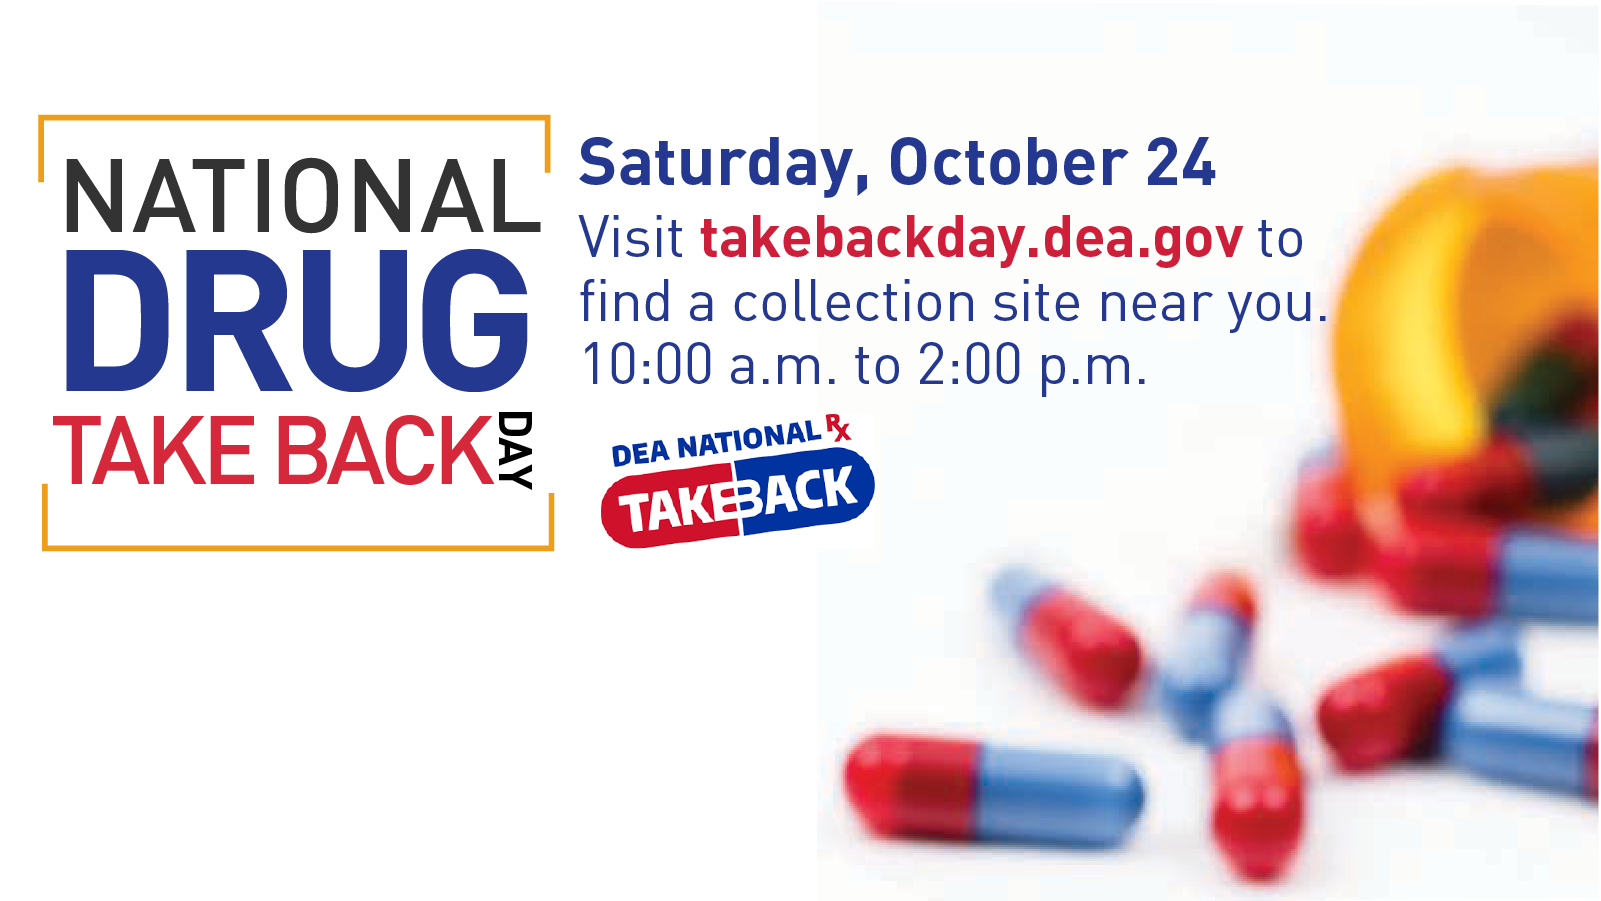 National Drug Take Back Day Saturday, October 24, 10 am - 2 pm takebackday.dea.gov